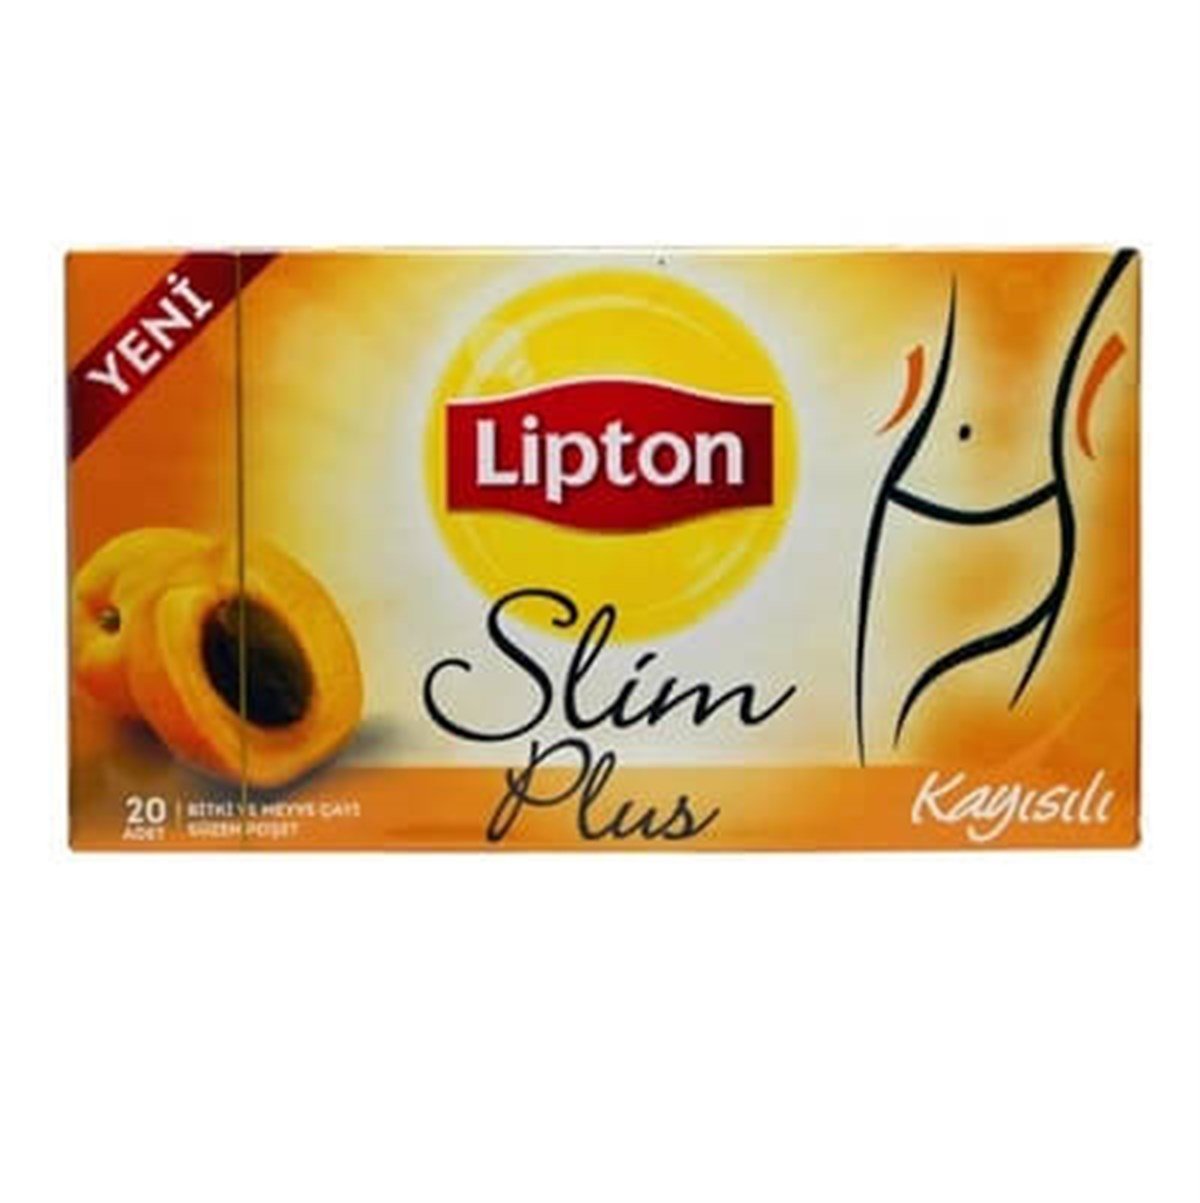 Lipton Slim Plus Kayısılı 20 Poşet Çay